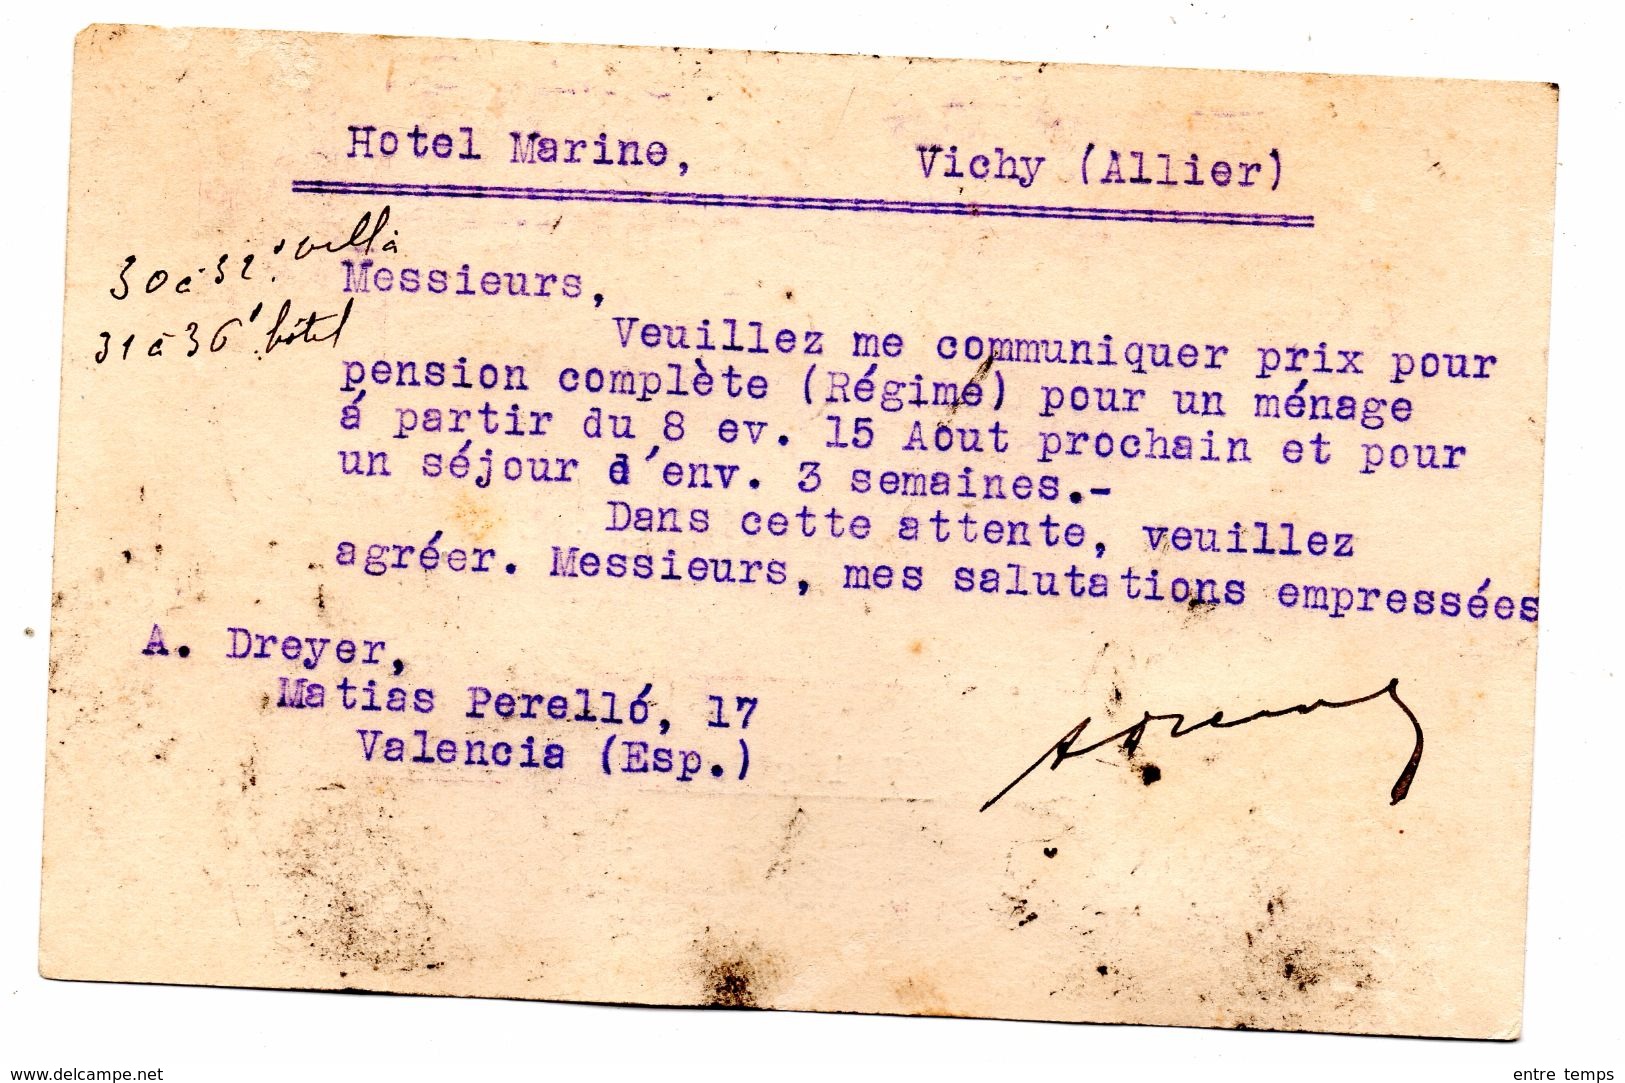 Entier Postal Espagne Surcharge Republica Espanola Valence Pour Vichy 03 - Storia Postale